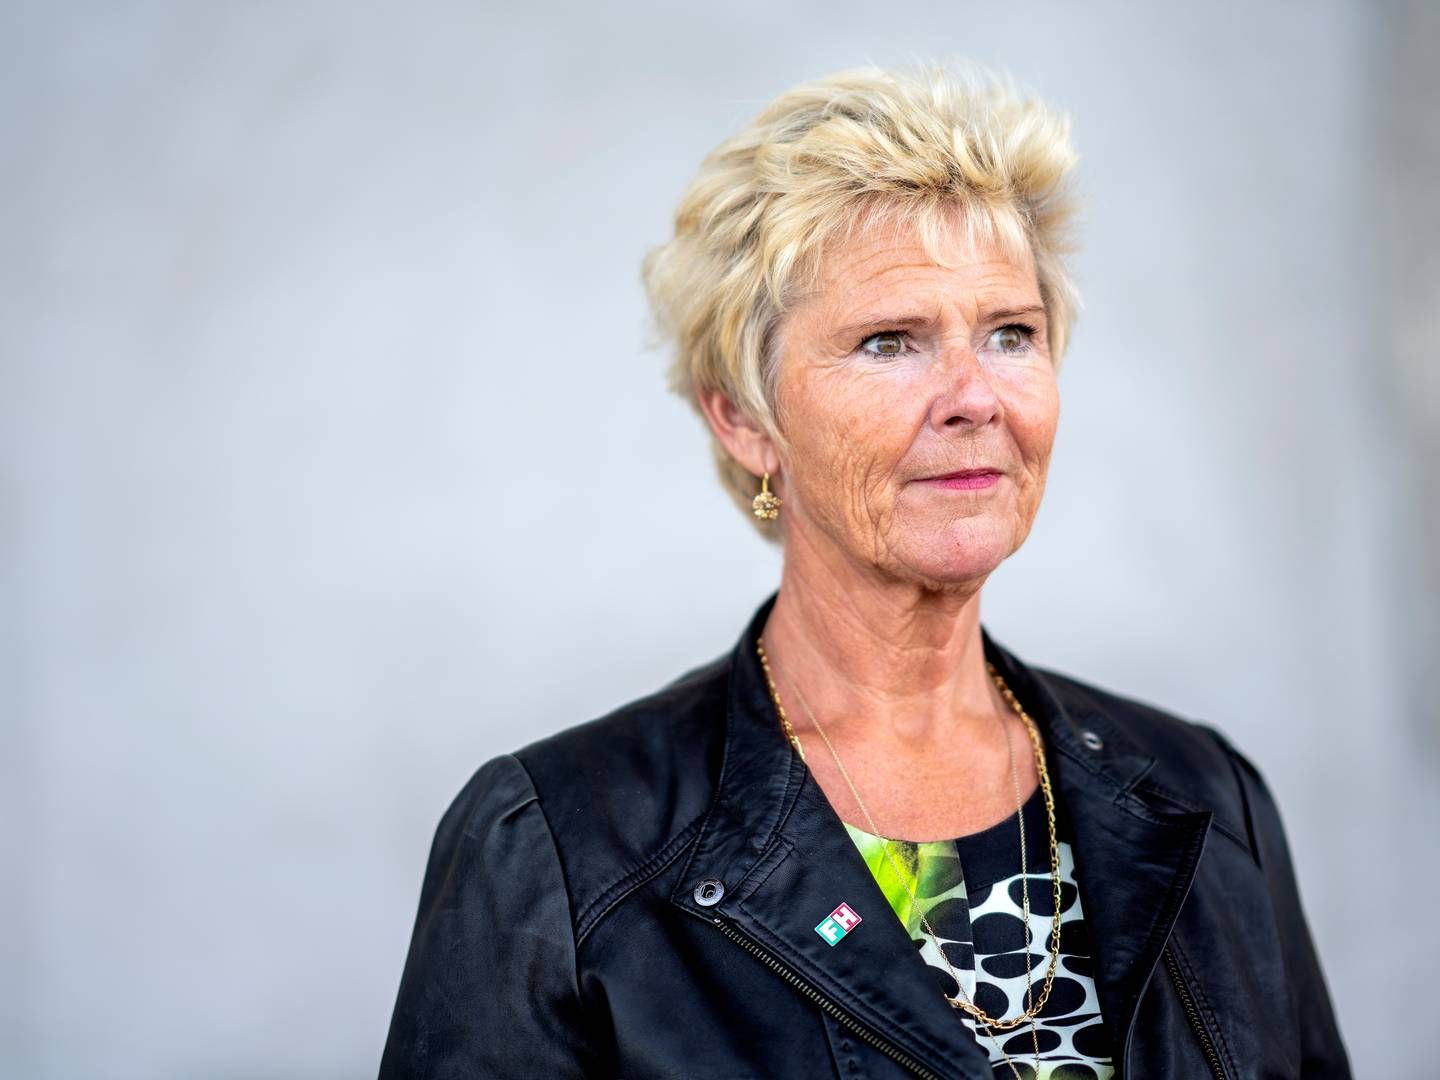 FH-formand Lizette Risgaard kritiserer manglende lydhørhed hos regeringen. | Foto: Stine Bidstrup